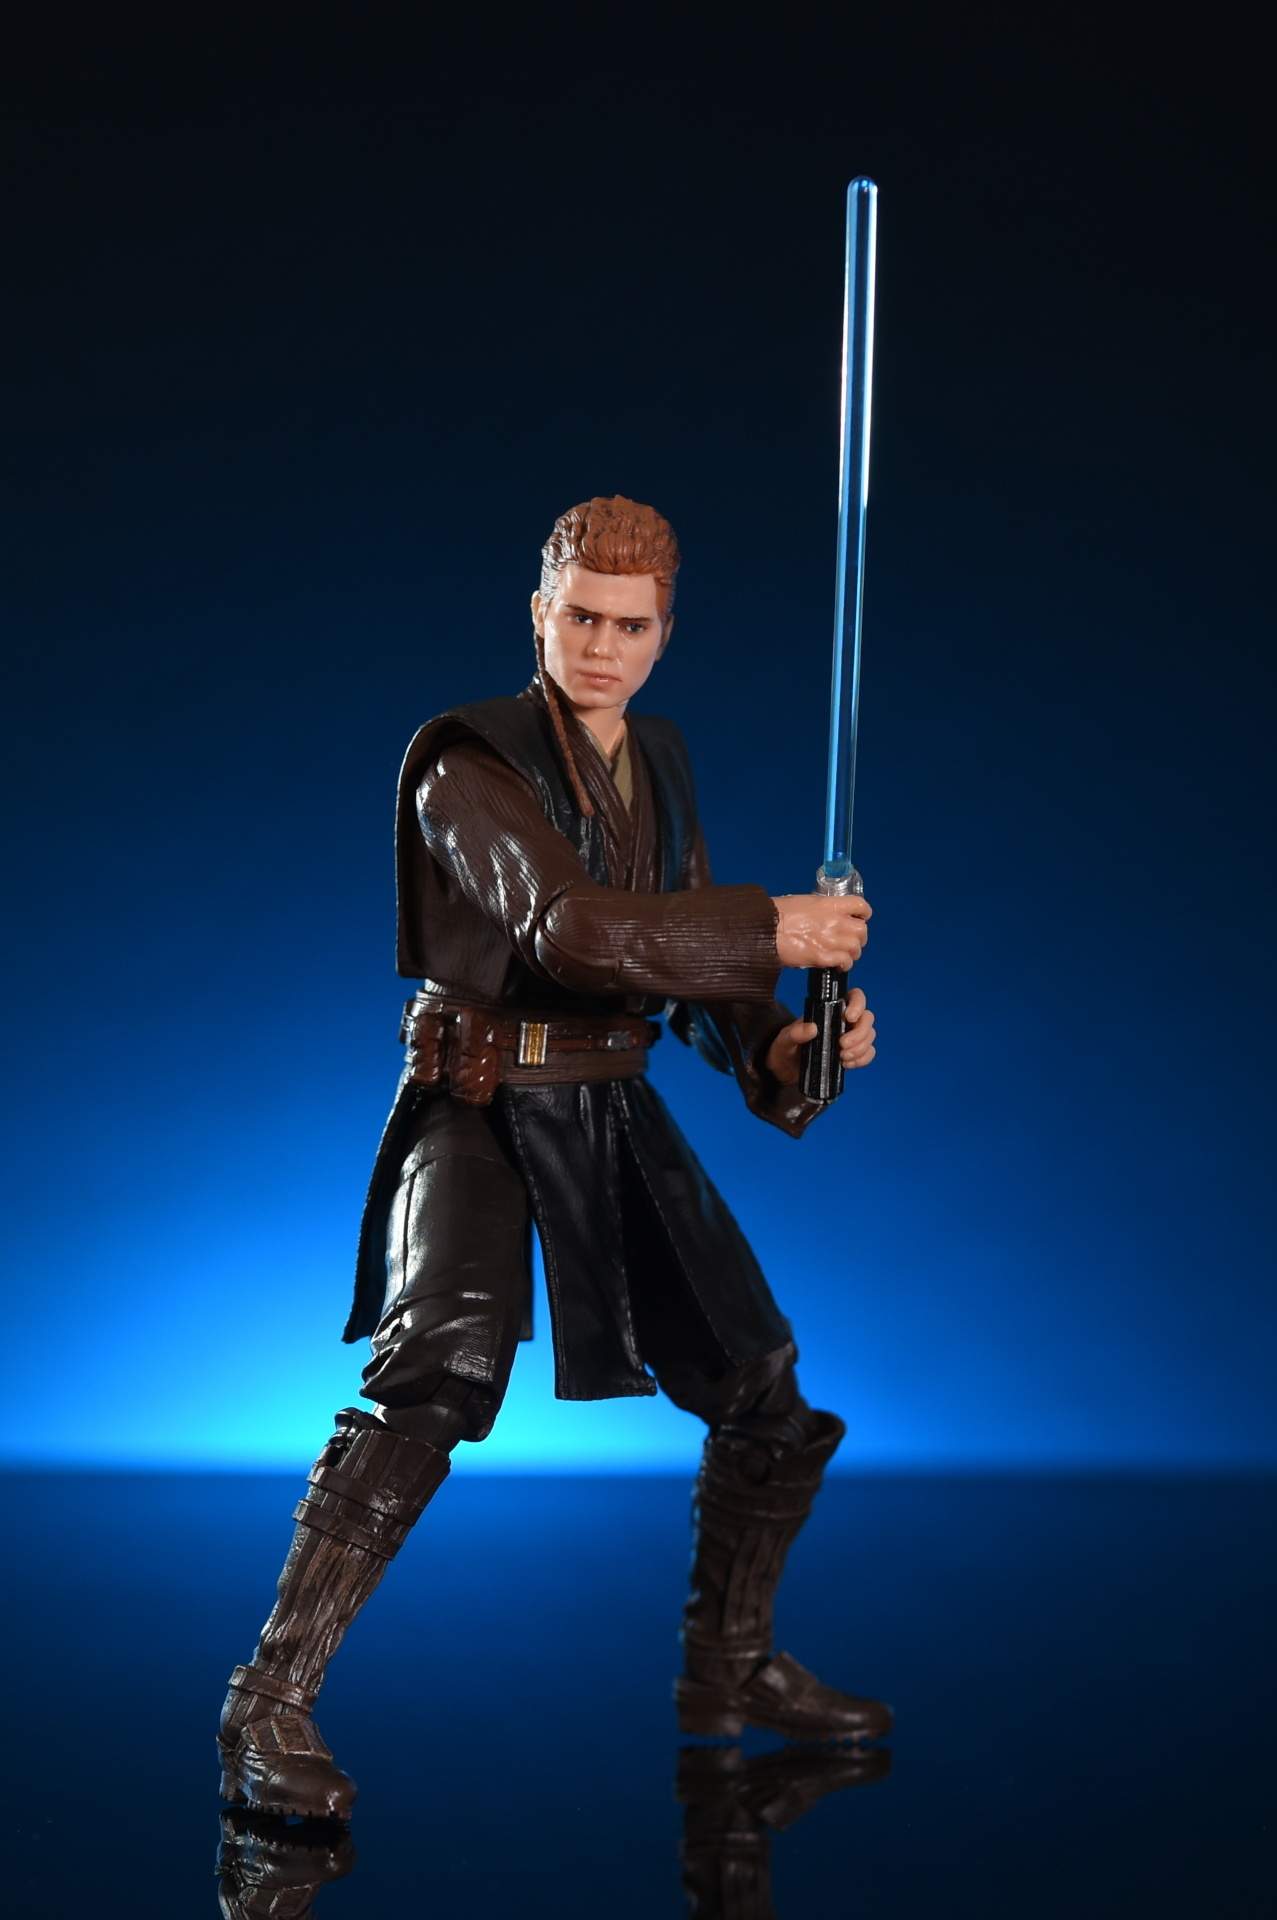 6" Action Figure Padawan Star Wars Black Series Anakin Skywalker 